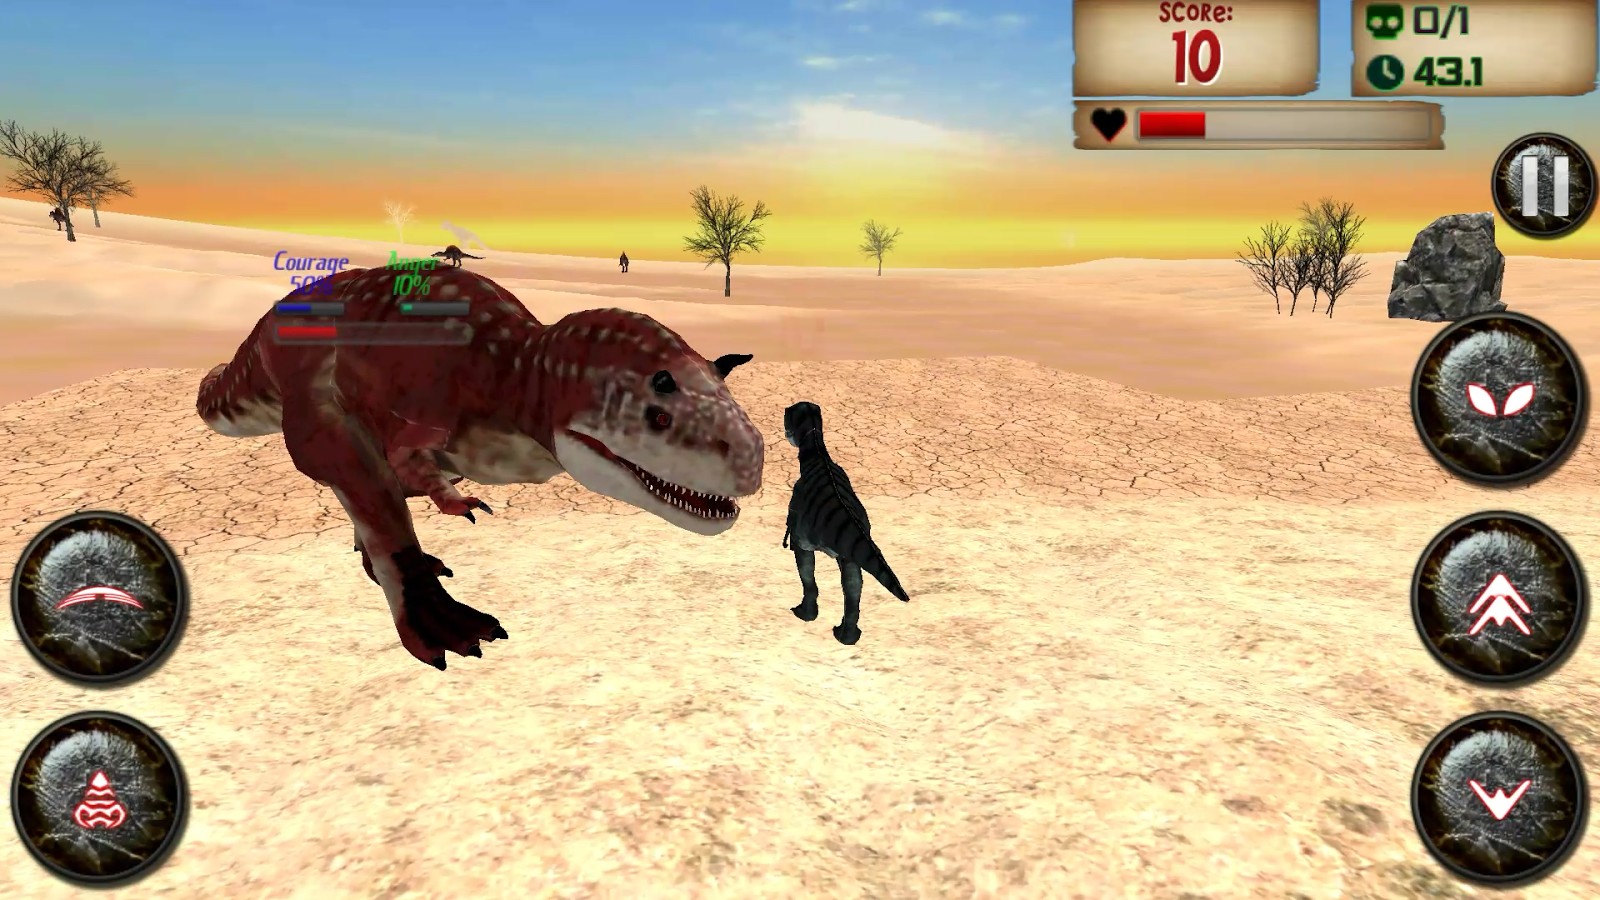 Download do APK de jogos de dinossauros para Android